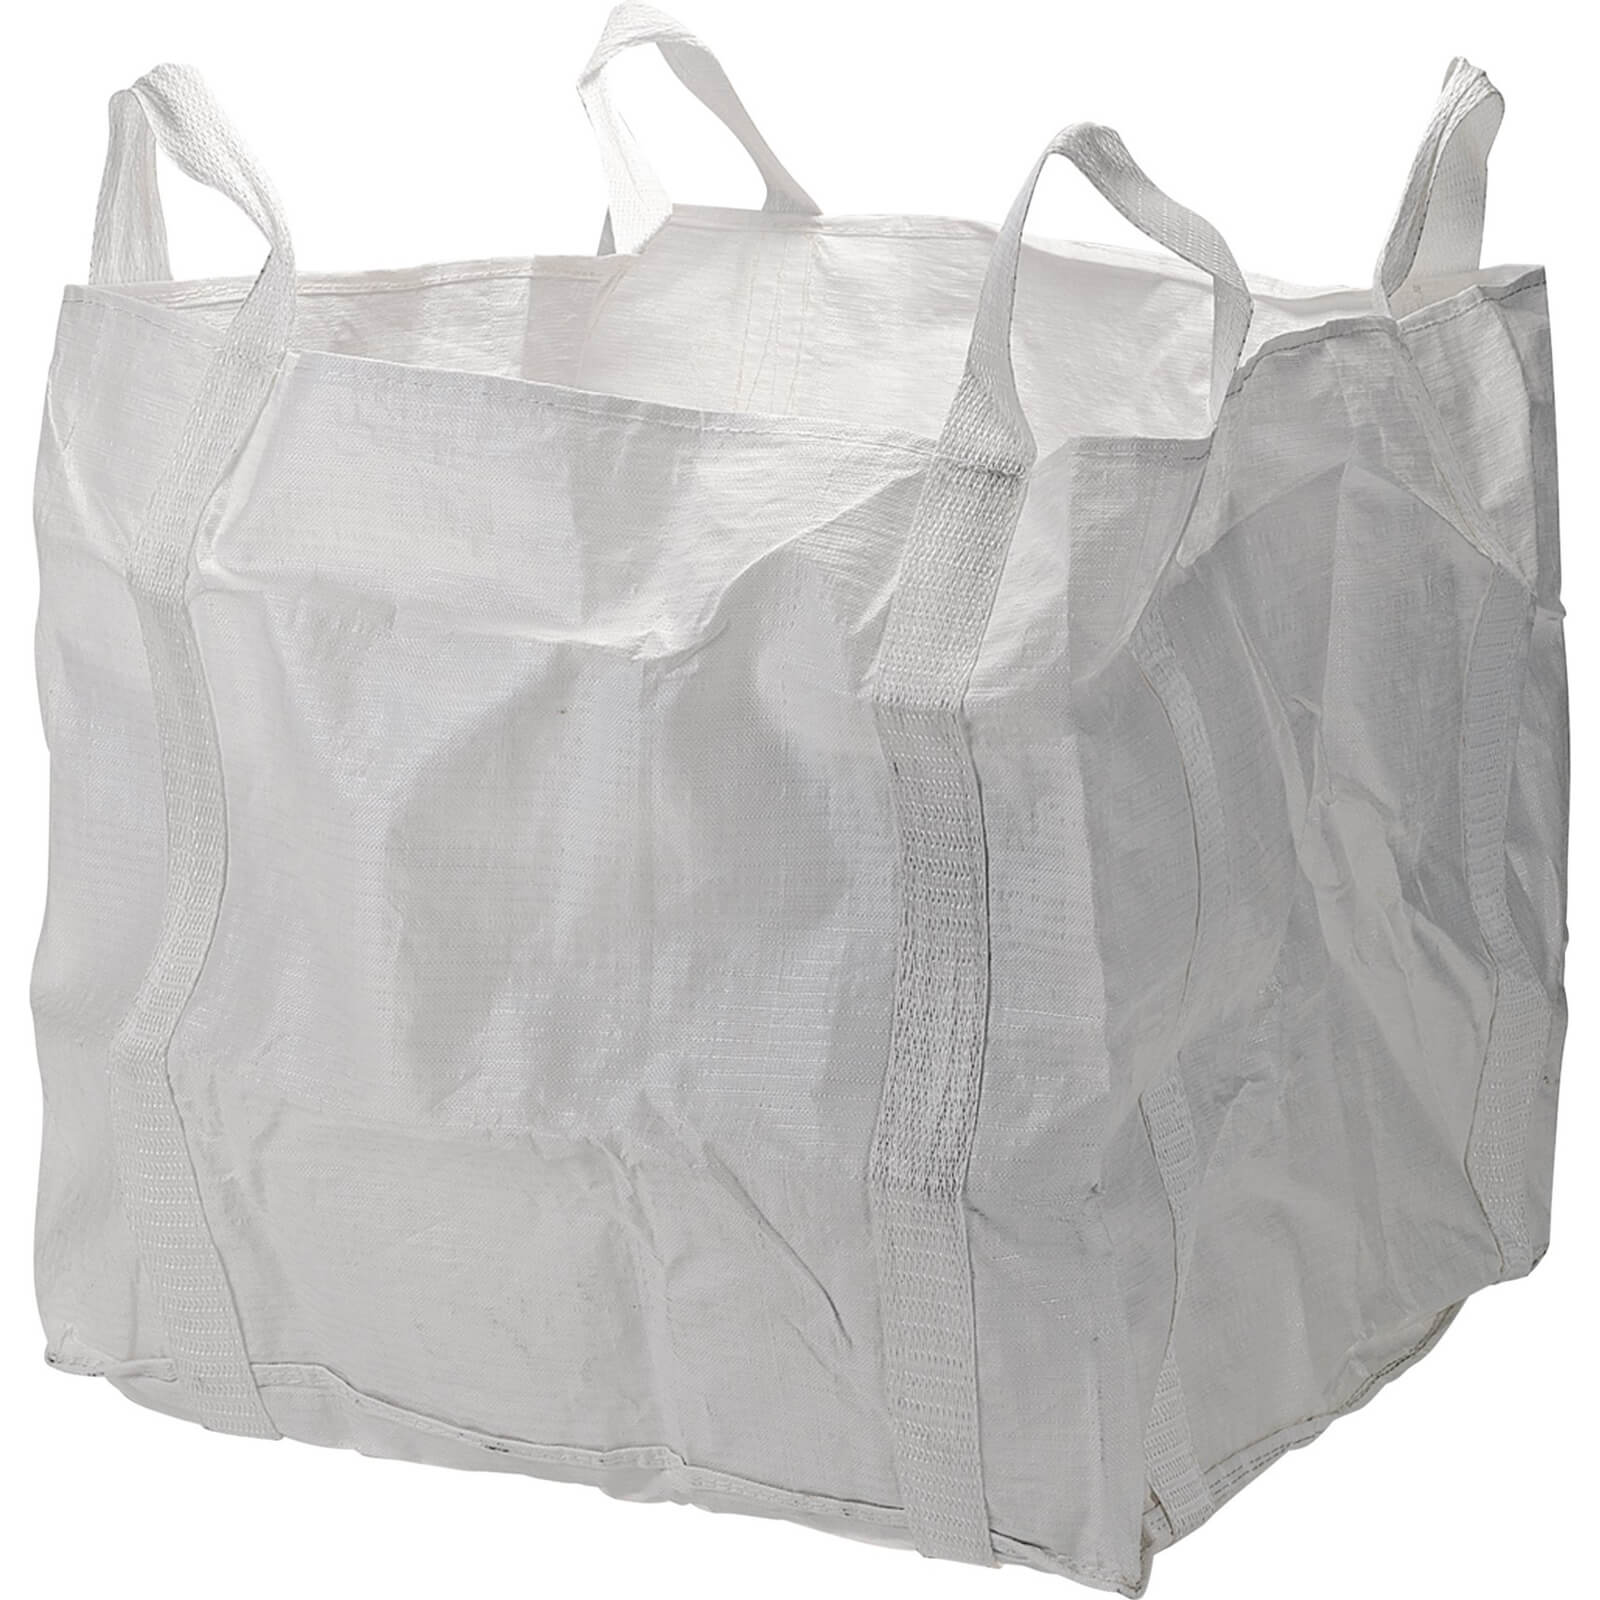 Image of Draper 1 Tonne Waste Bag